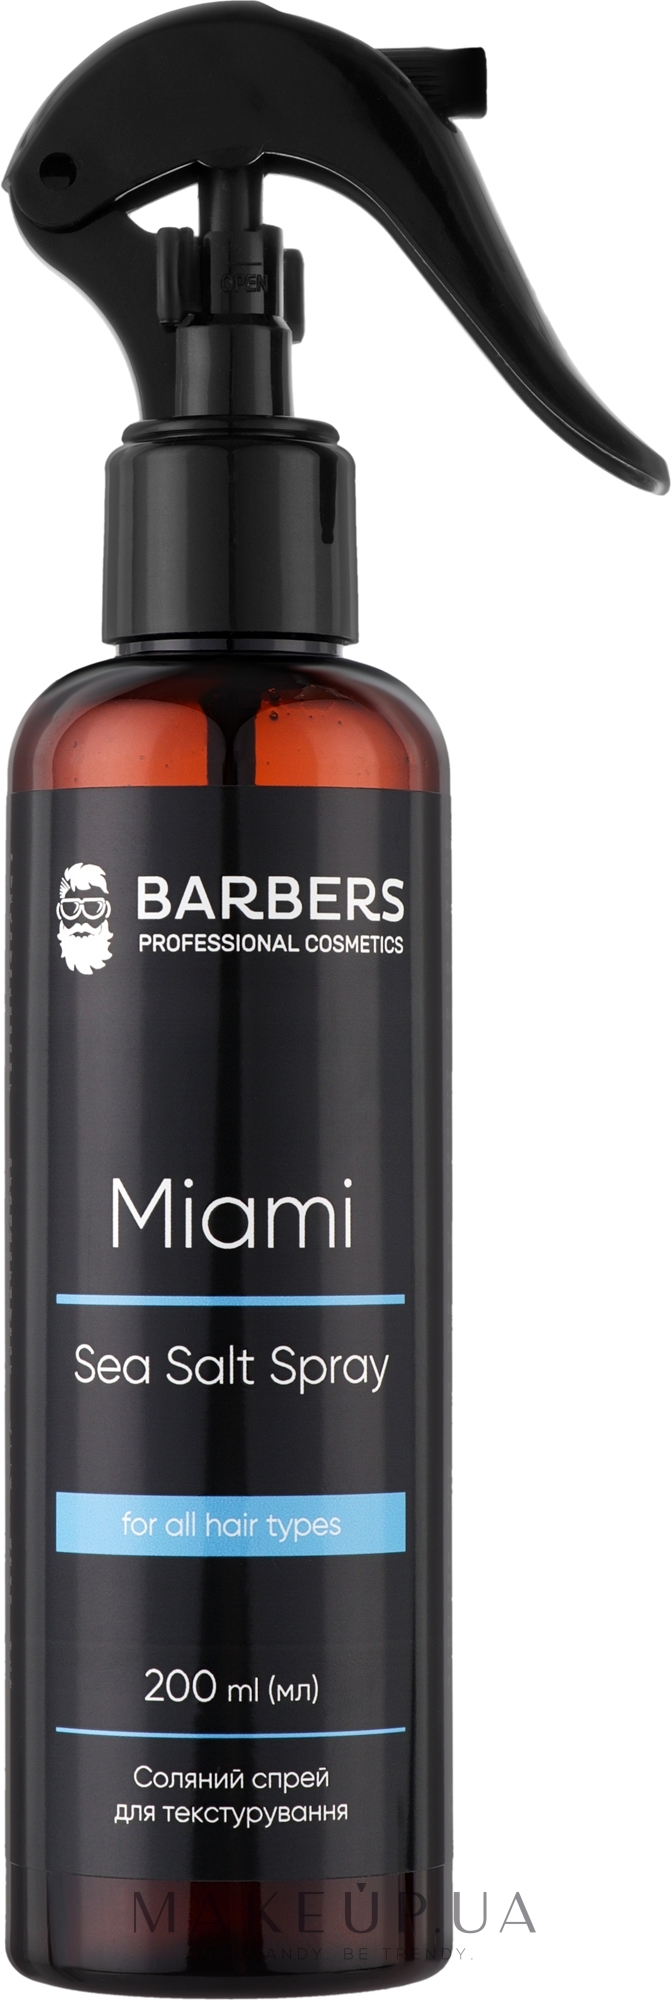 Текстурувальний соляний спрей для волосся - Barbers Miami Sea Salt Spray — фото 200ml